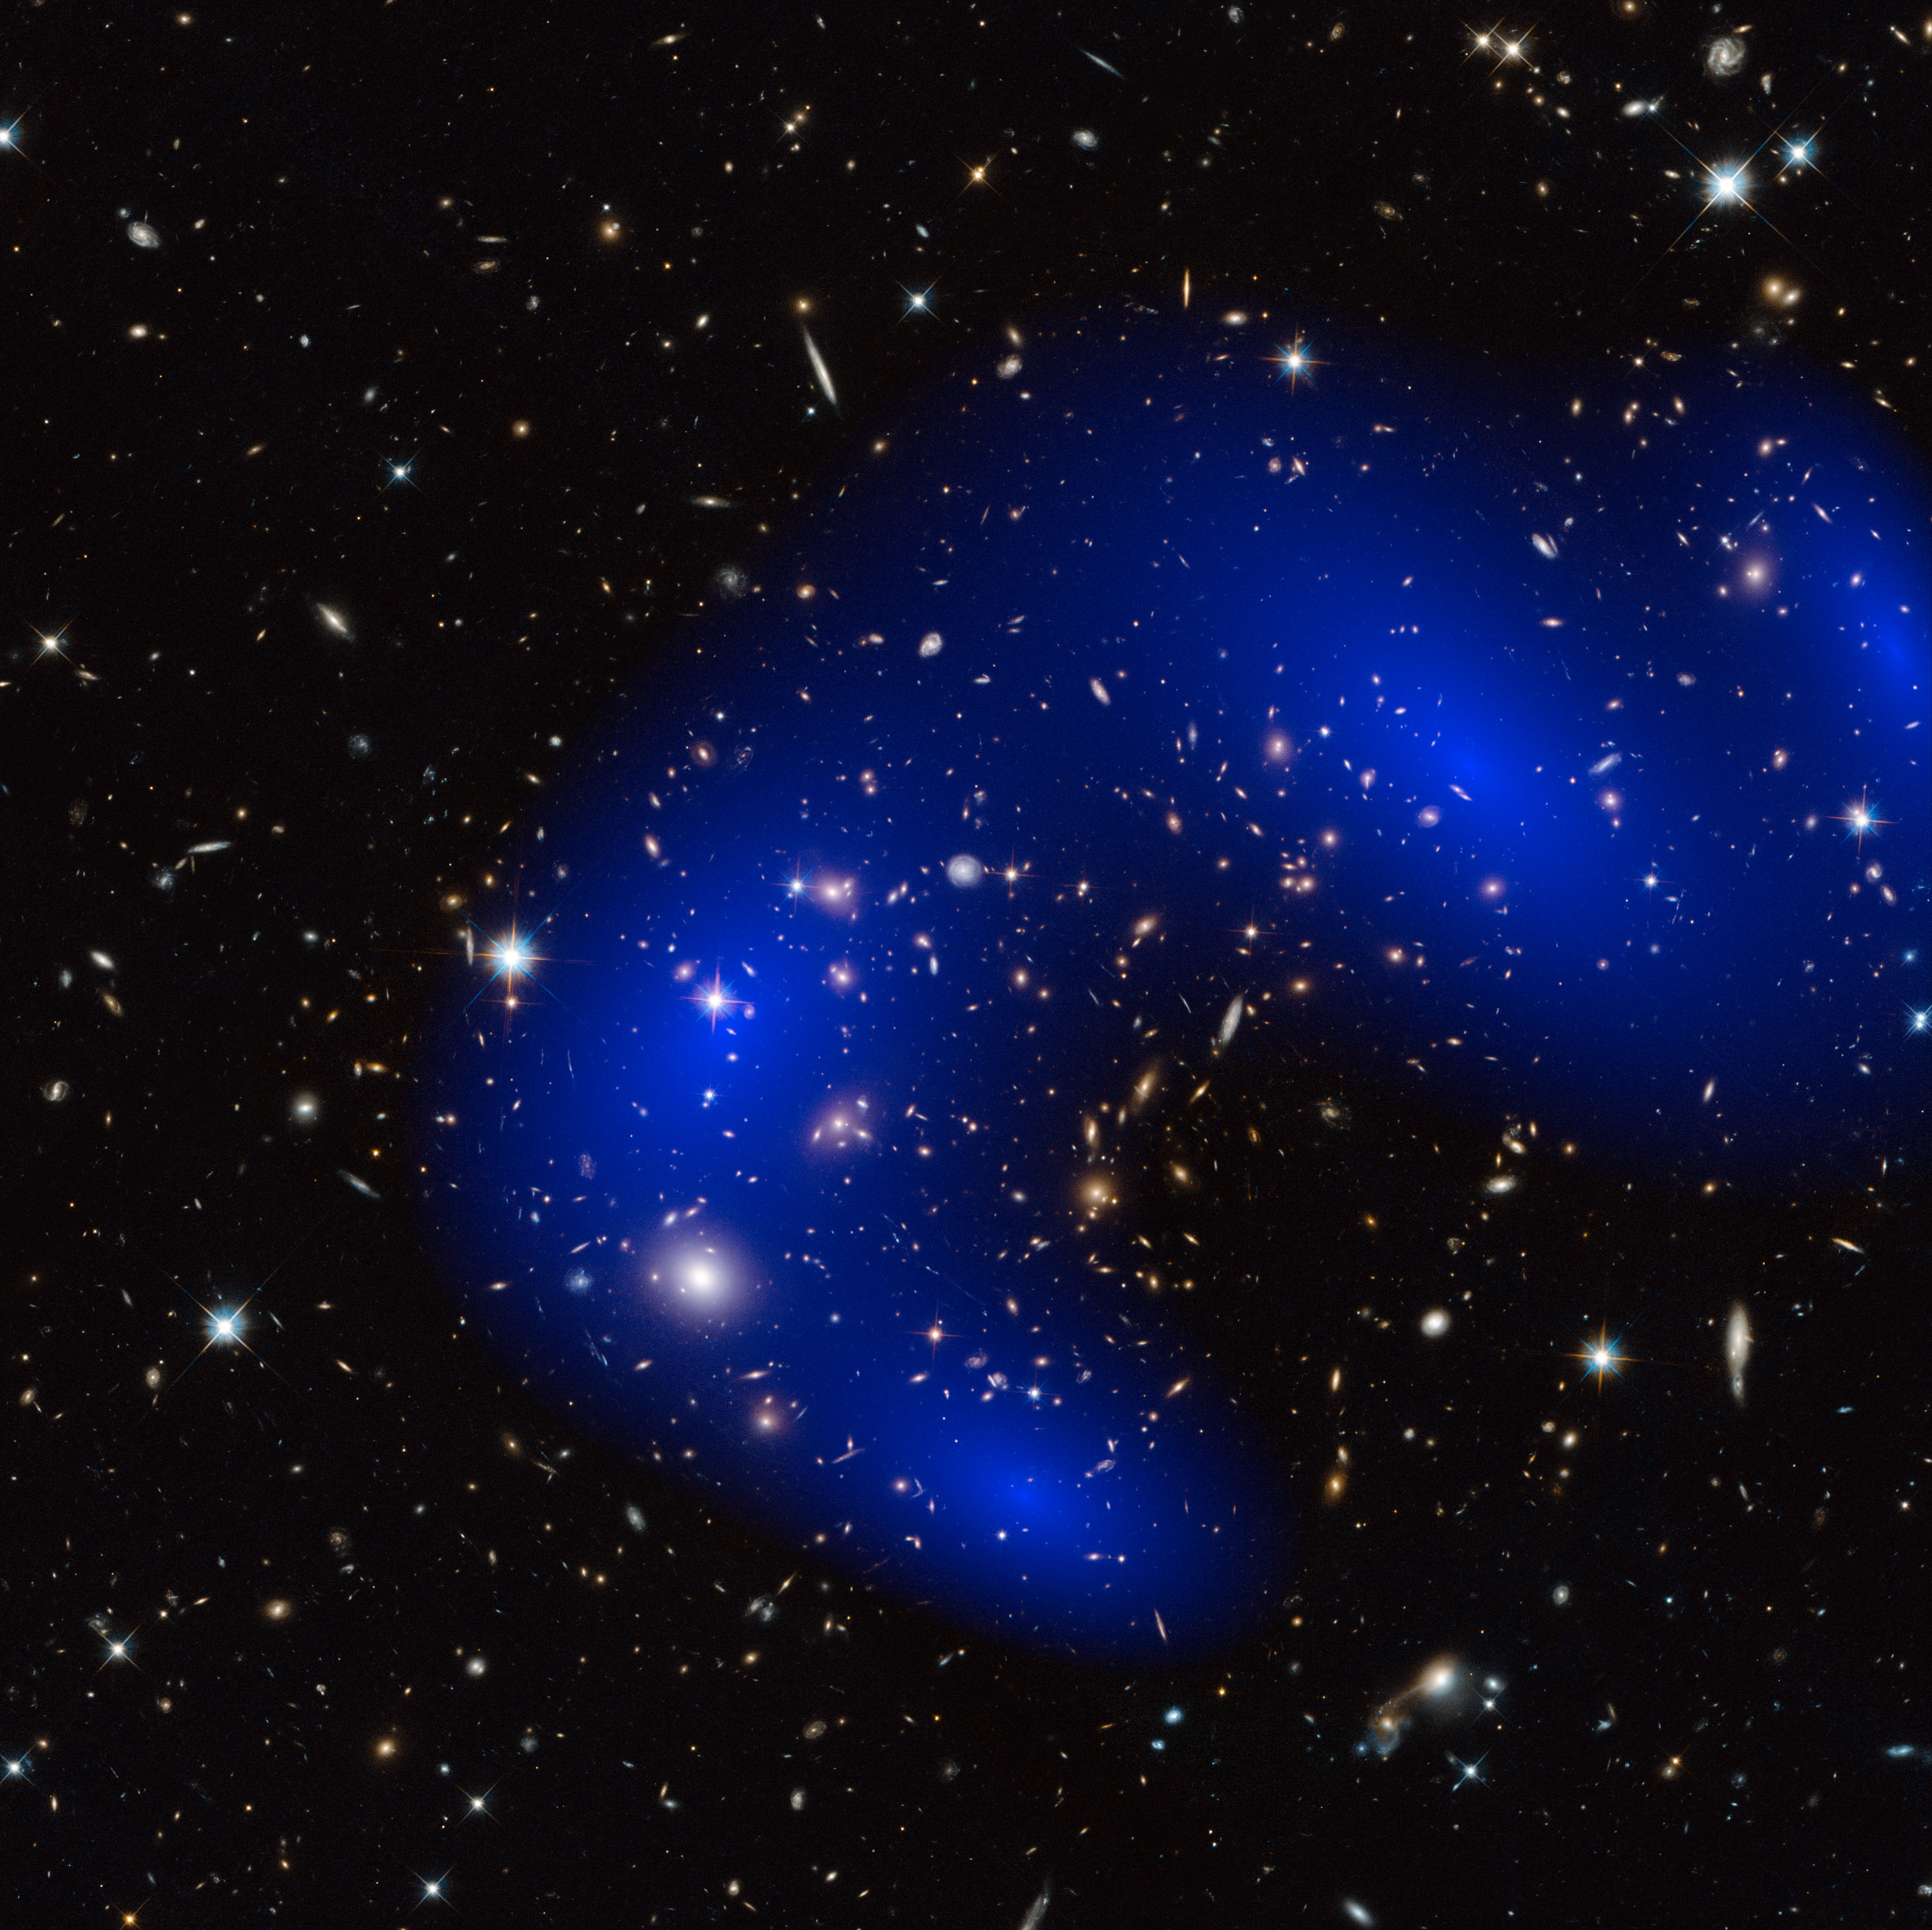 MACS J0717 galaxy cluster dark matter